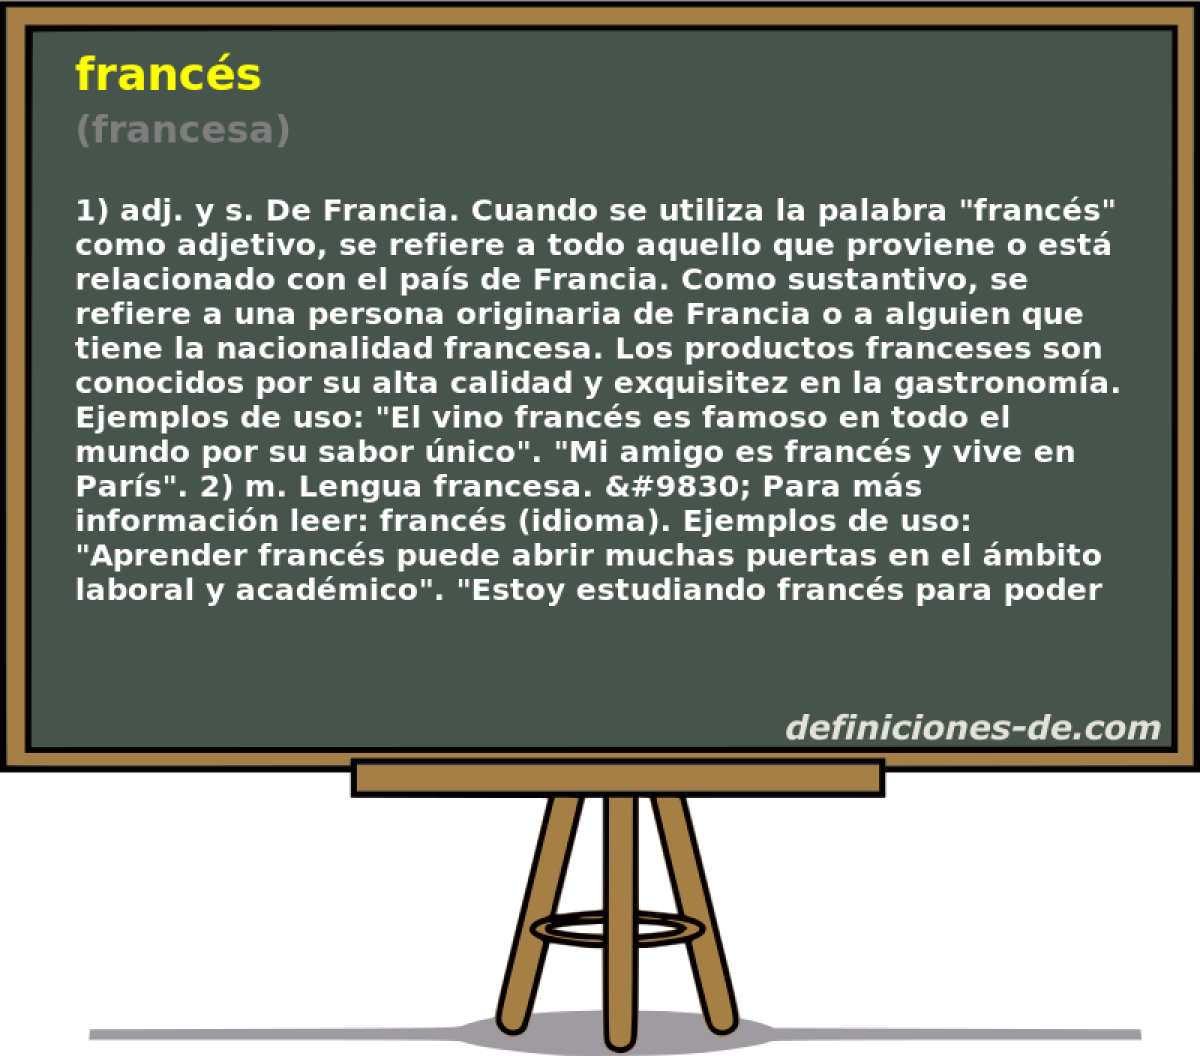 francs (francesa)